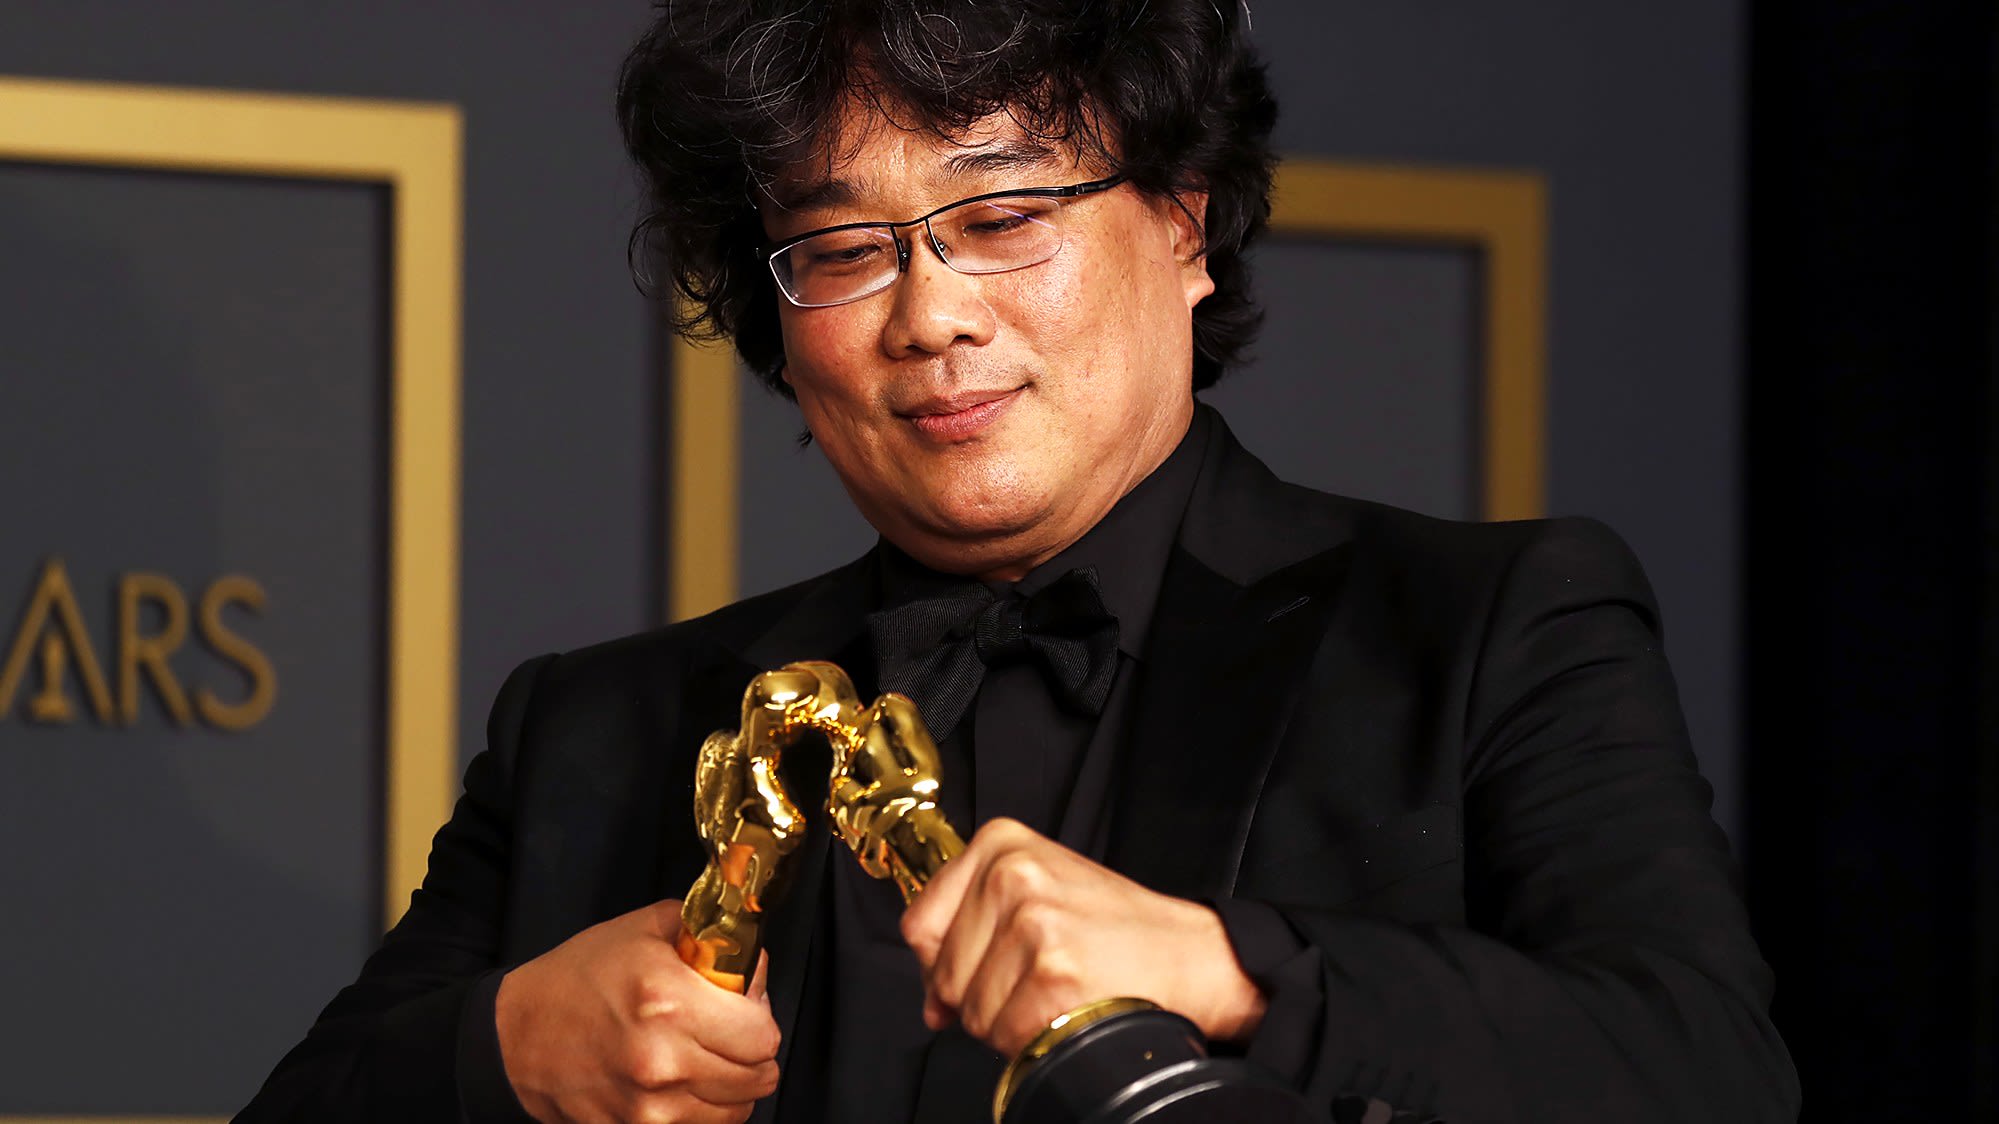  5 đạo diễn gốc Á thành danh tại Hollywood và tầm ảnh hưởng đến nền điện ảnh thế giới những năm gần đây - Ảnh 3.